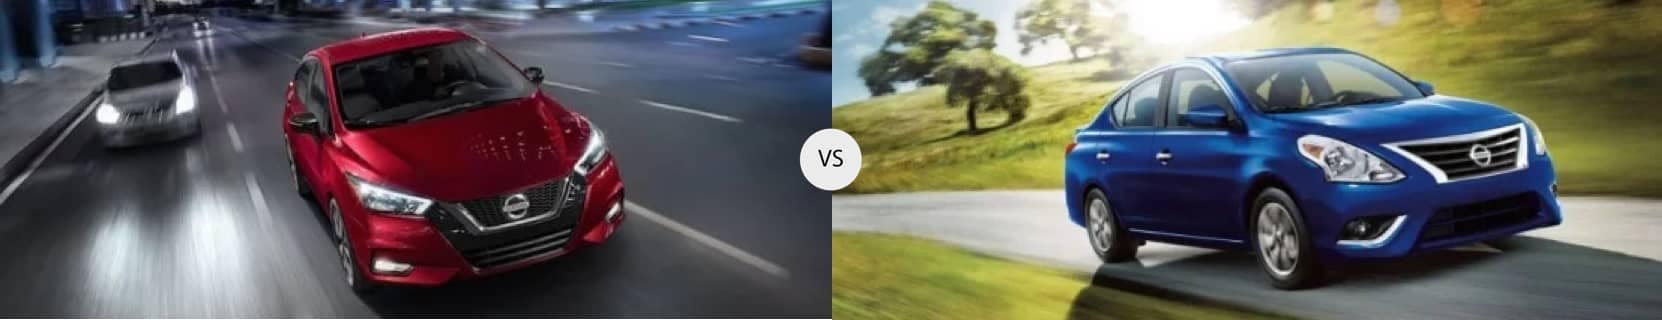 2020 Nissan Versa vs 2019 Nissan Versa